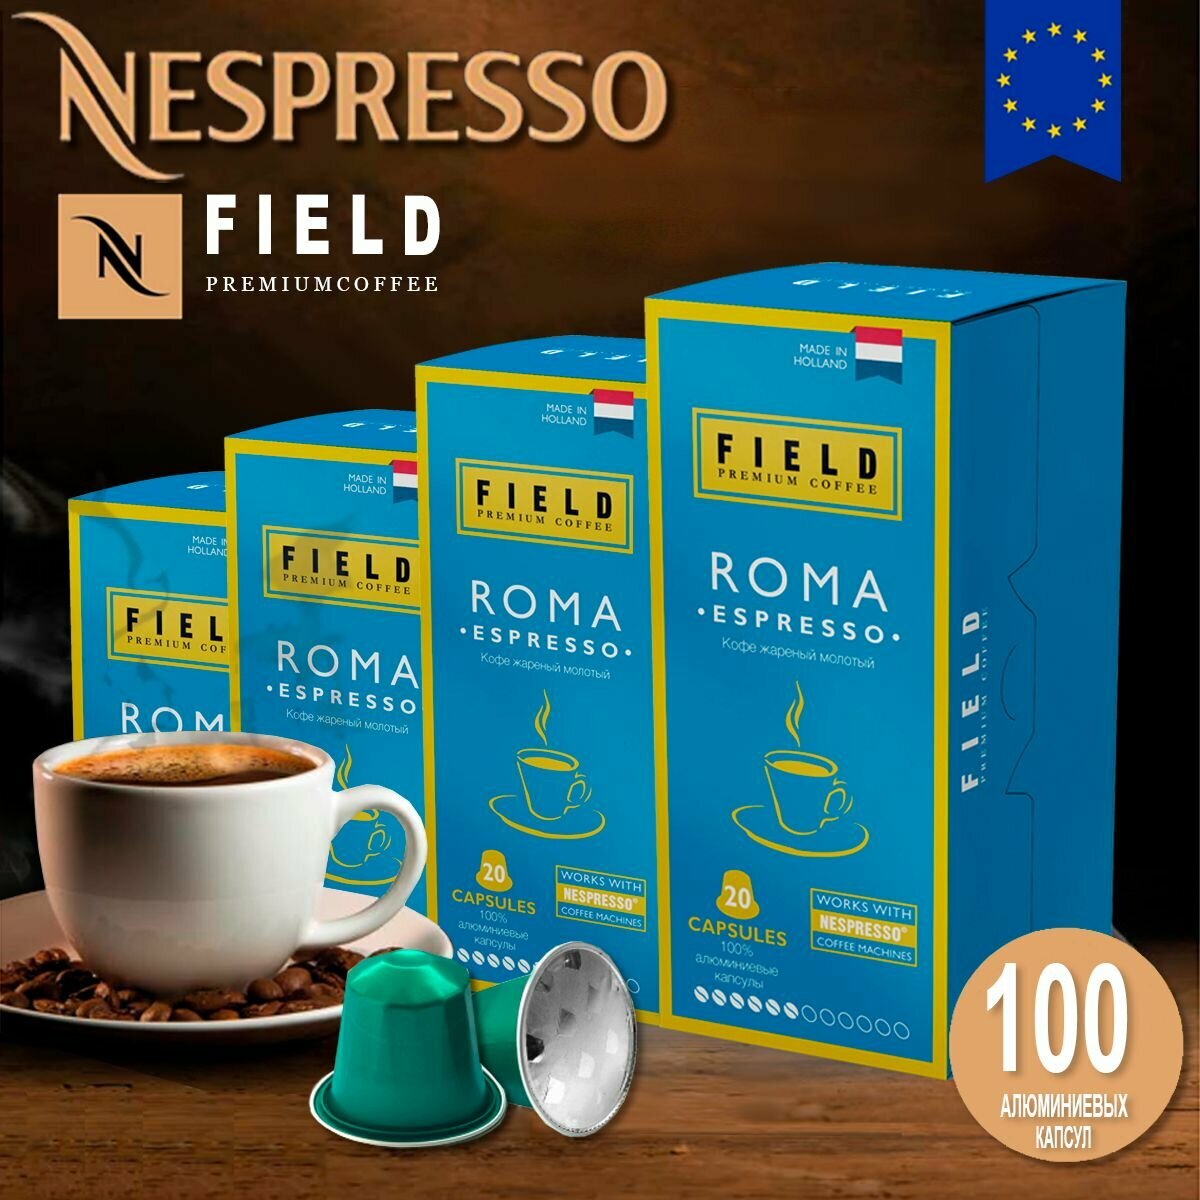 Кофе в капсулах Nespresso 100 шт алюминиевых капсул, молотый Field Premium Coffee Espresso Roma. Интенсивность вкуса 6 - фотография № 1